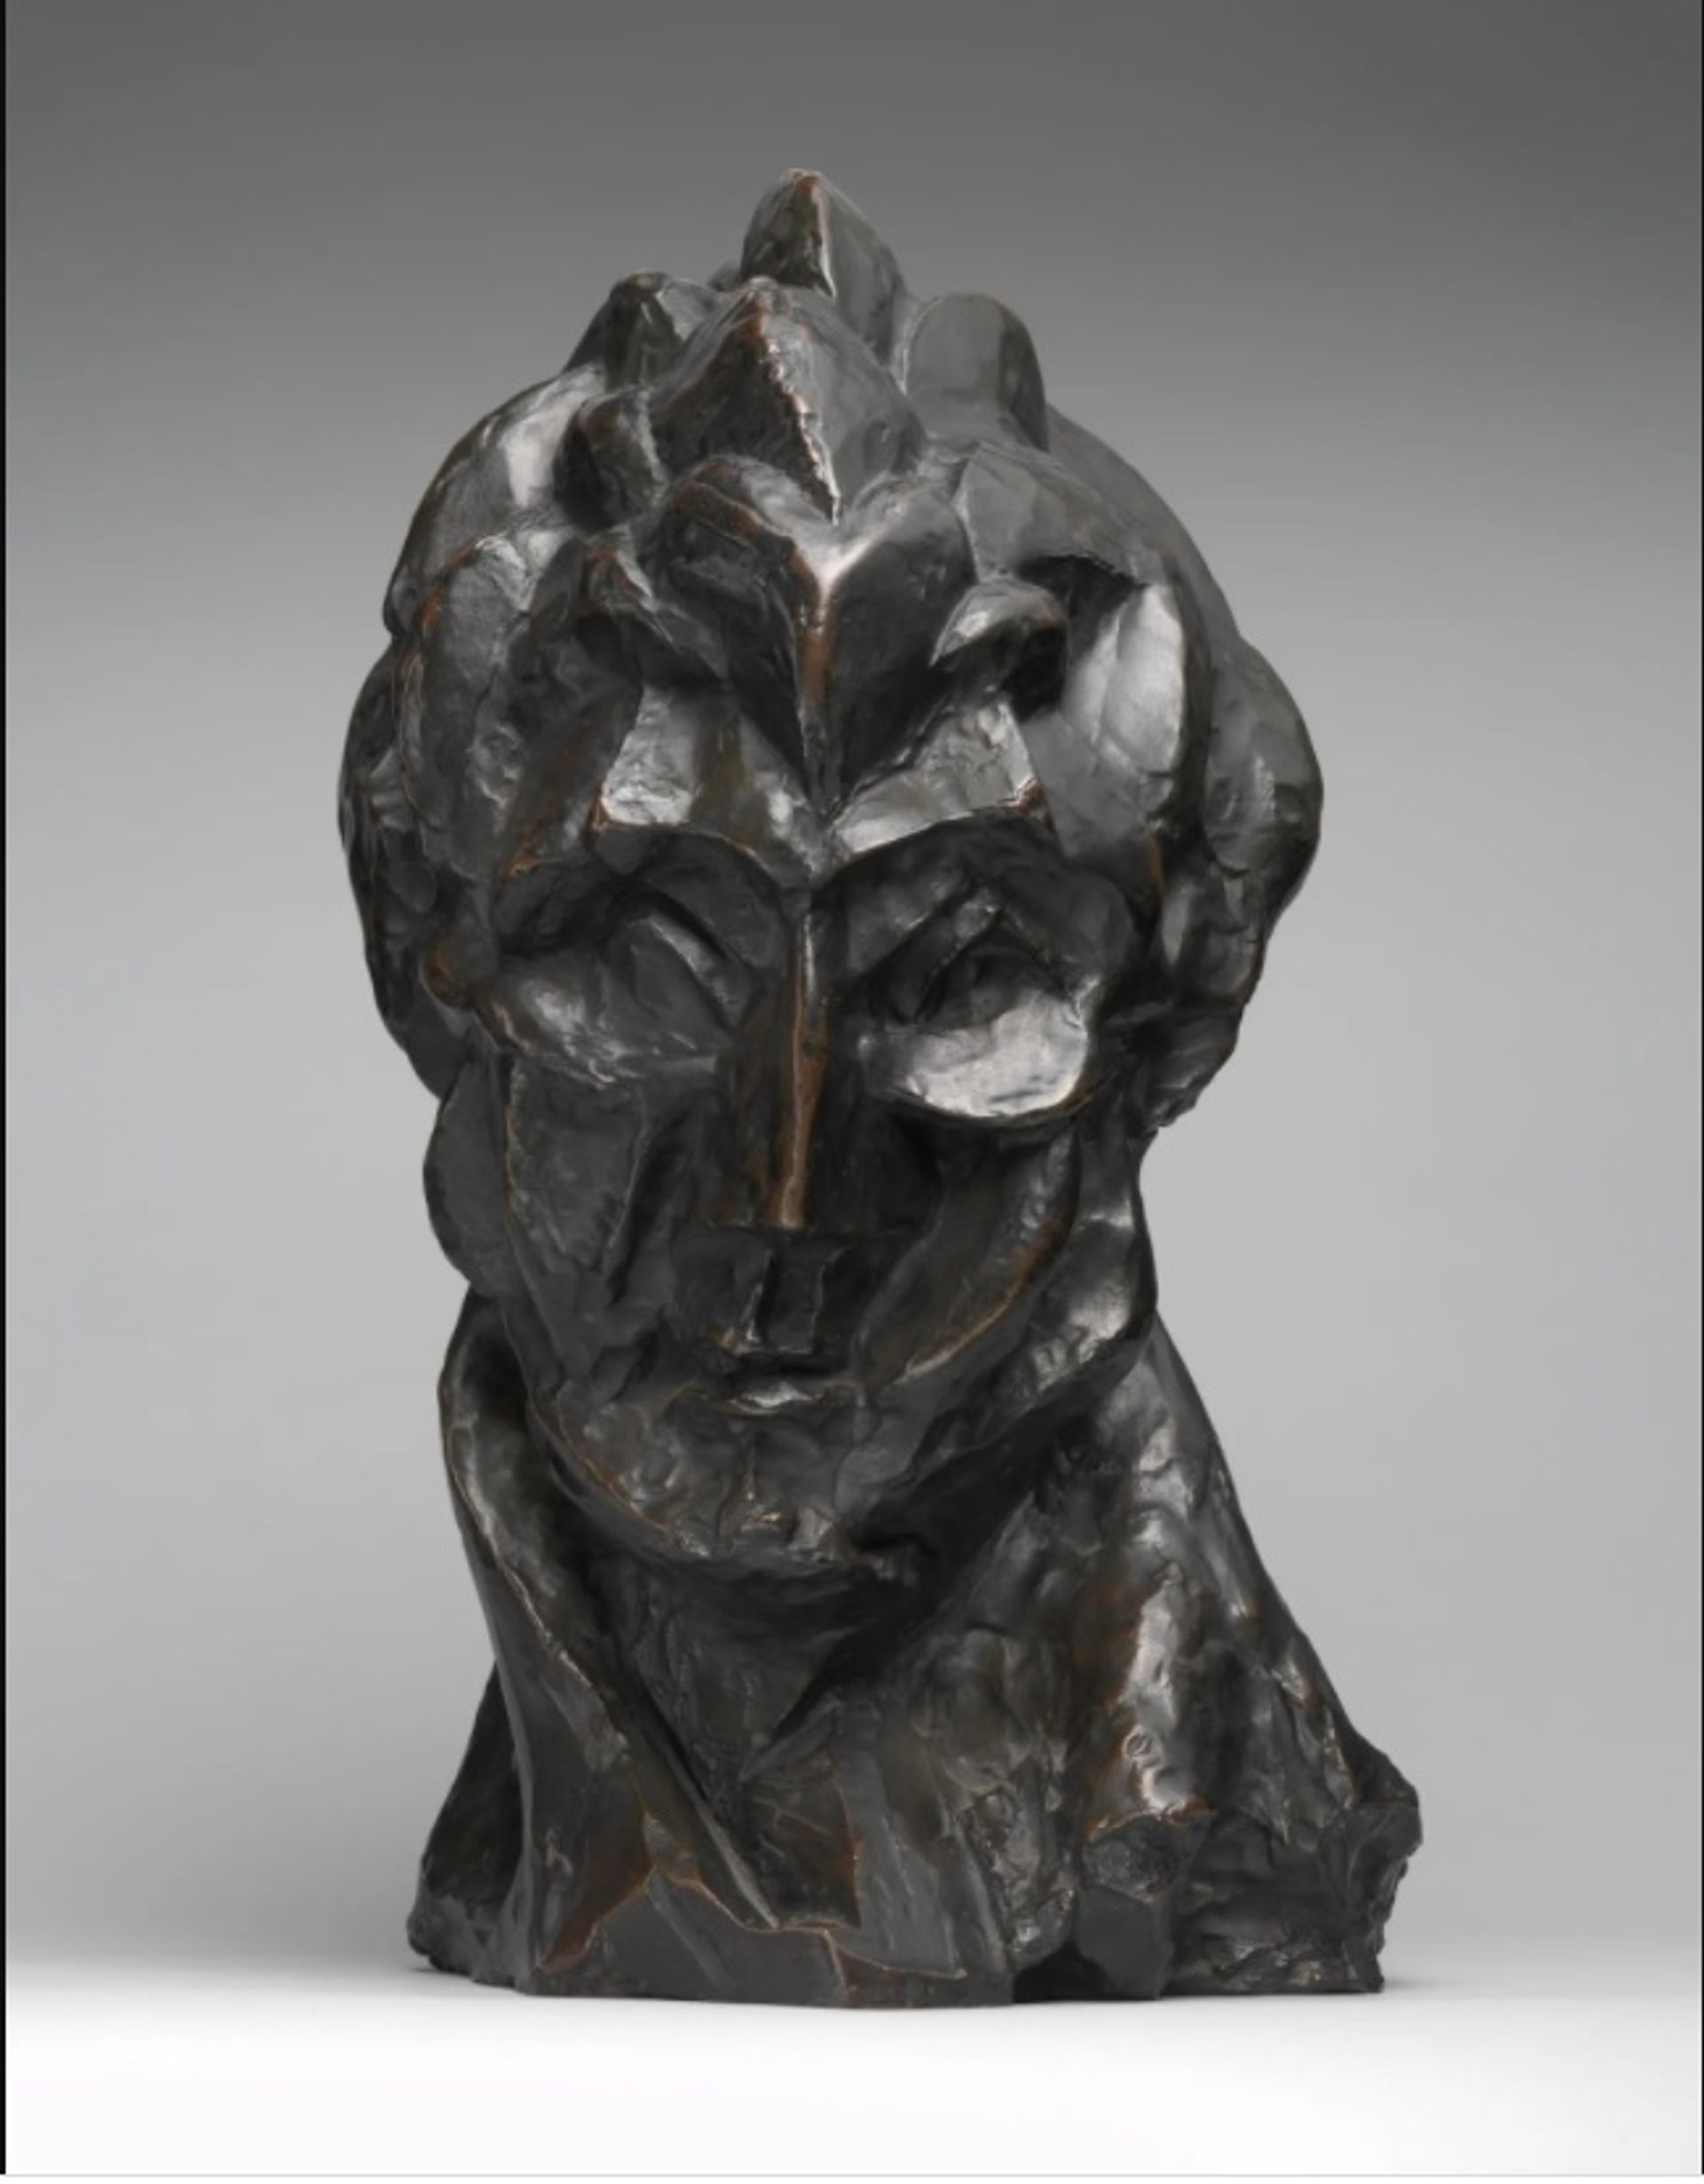 פבלו פיקאסו, Head of a Woman (1909)

מוזיאון המטרופוליטן לאמנות, עזבונה של פלורן מ. שונבורן, 1995 © 2022 העזבון של פבלו פיקאסו / אגודת זכויות האמנים (ARS), ניו יורק